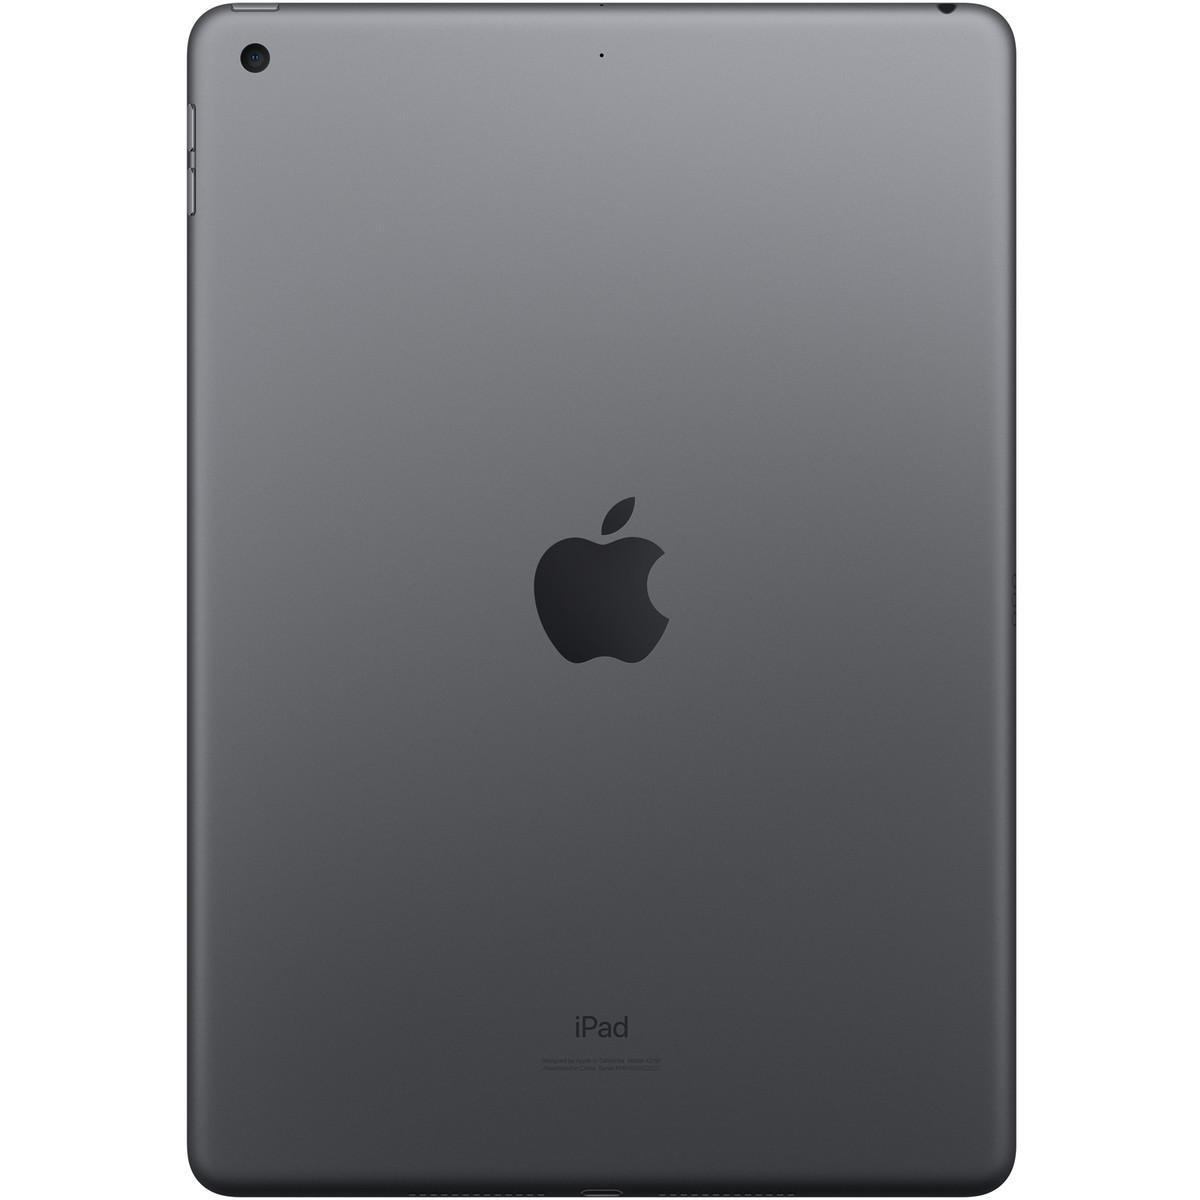 Apple iPad 5 32GB Wi-Fi Space Grey Very Good